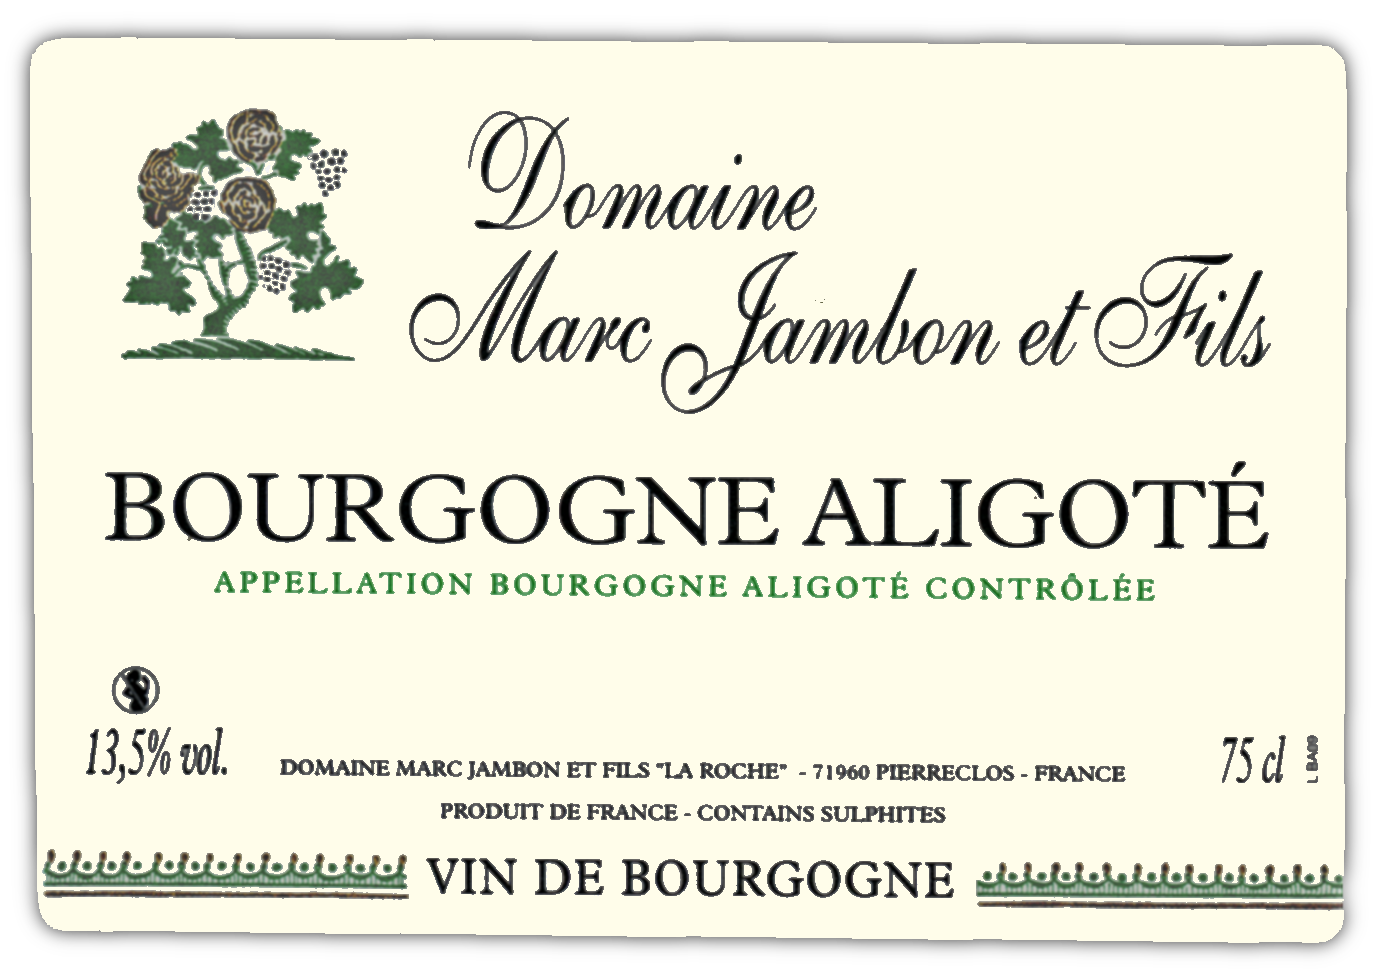 Bourgogne aligote Domaine Marc JAMBON et Fils